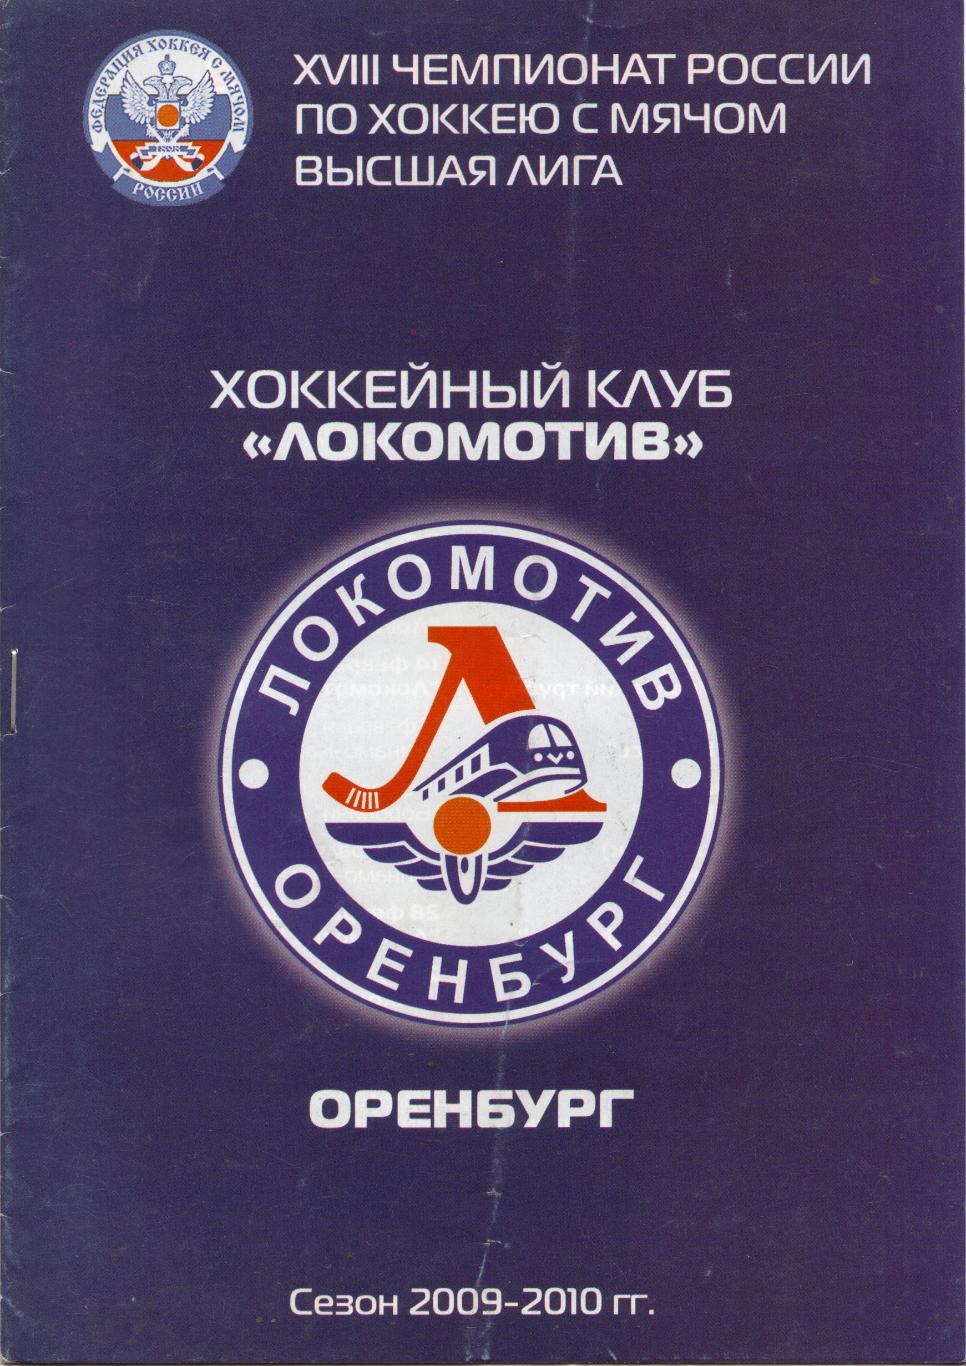 Локомотив Оренбург - Енисей Красноярск 21.12.2009